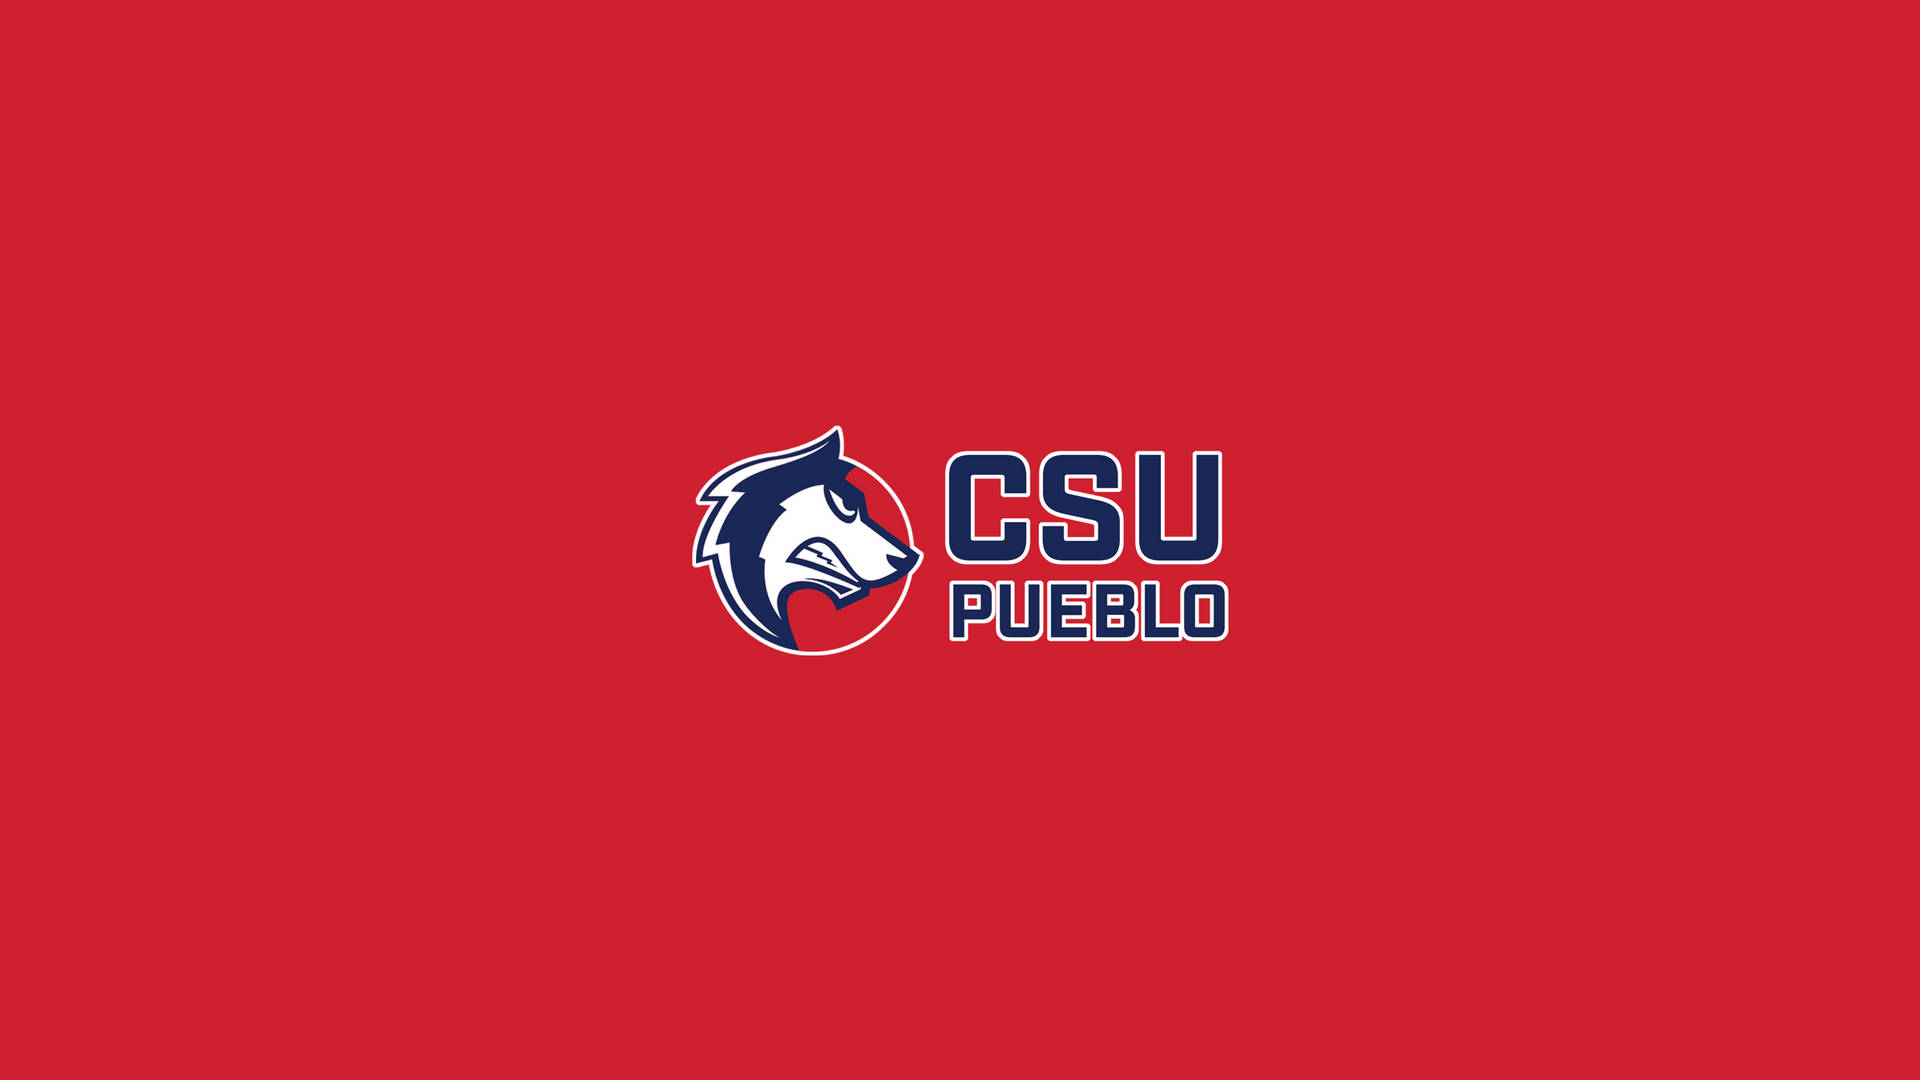 Coloradostate University Csu Pueblo Fondo de pantalla